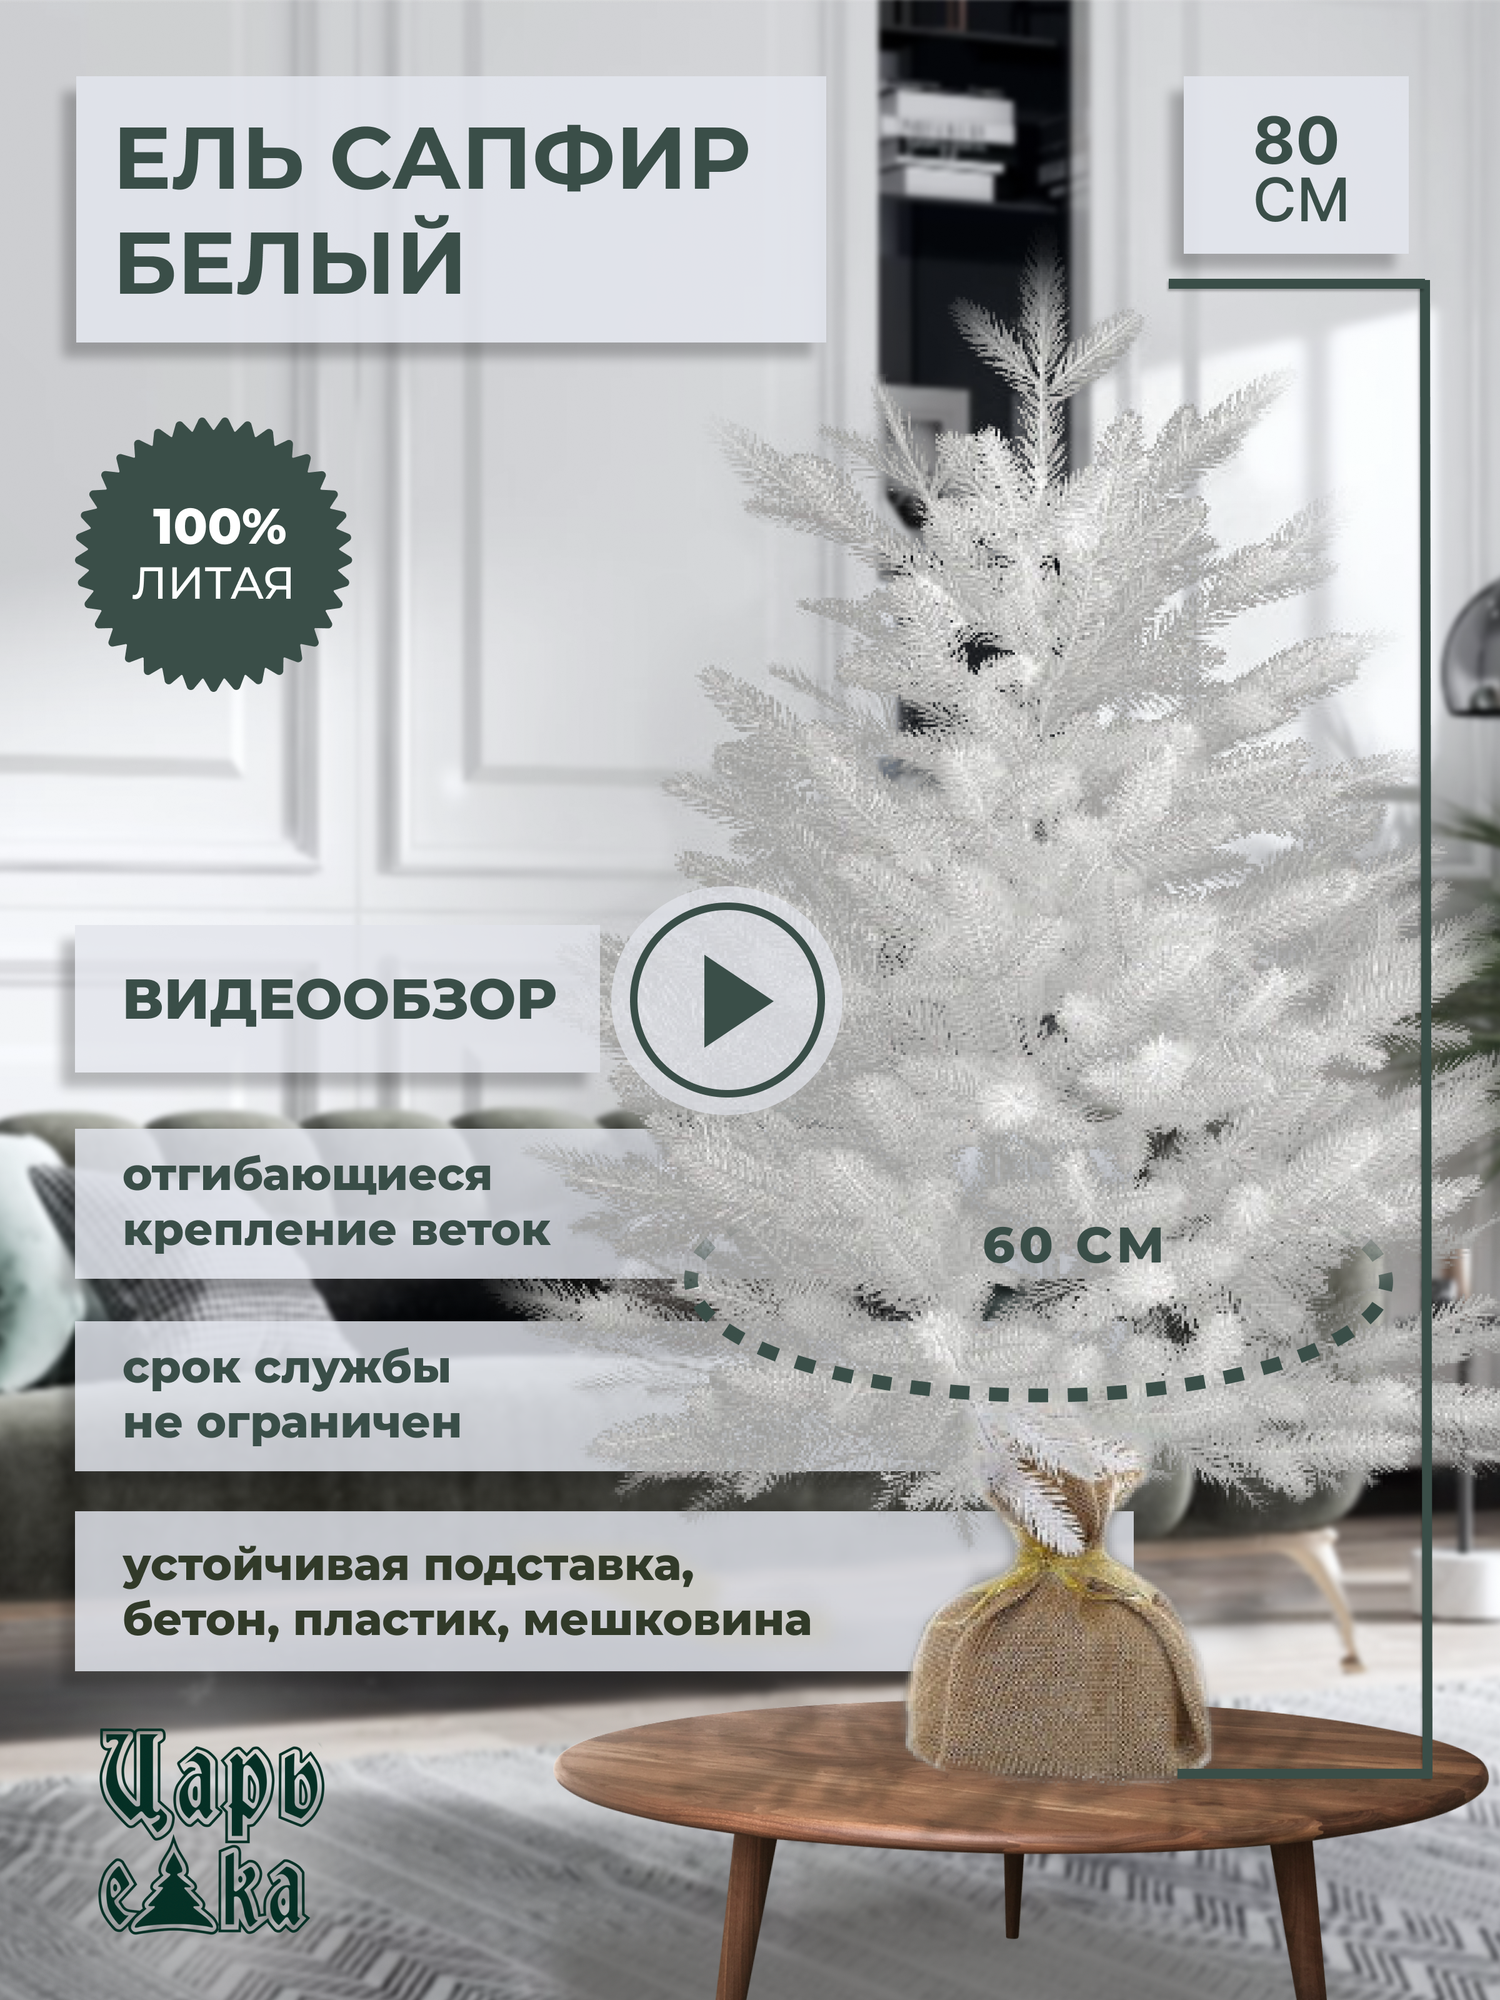 Ель искусственная Царь елка Сапфир белый 80 см(СФ/Б-80), литая, белая, премиум, пушистая, настольная, новогодняя елка.